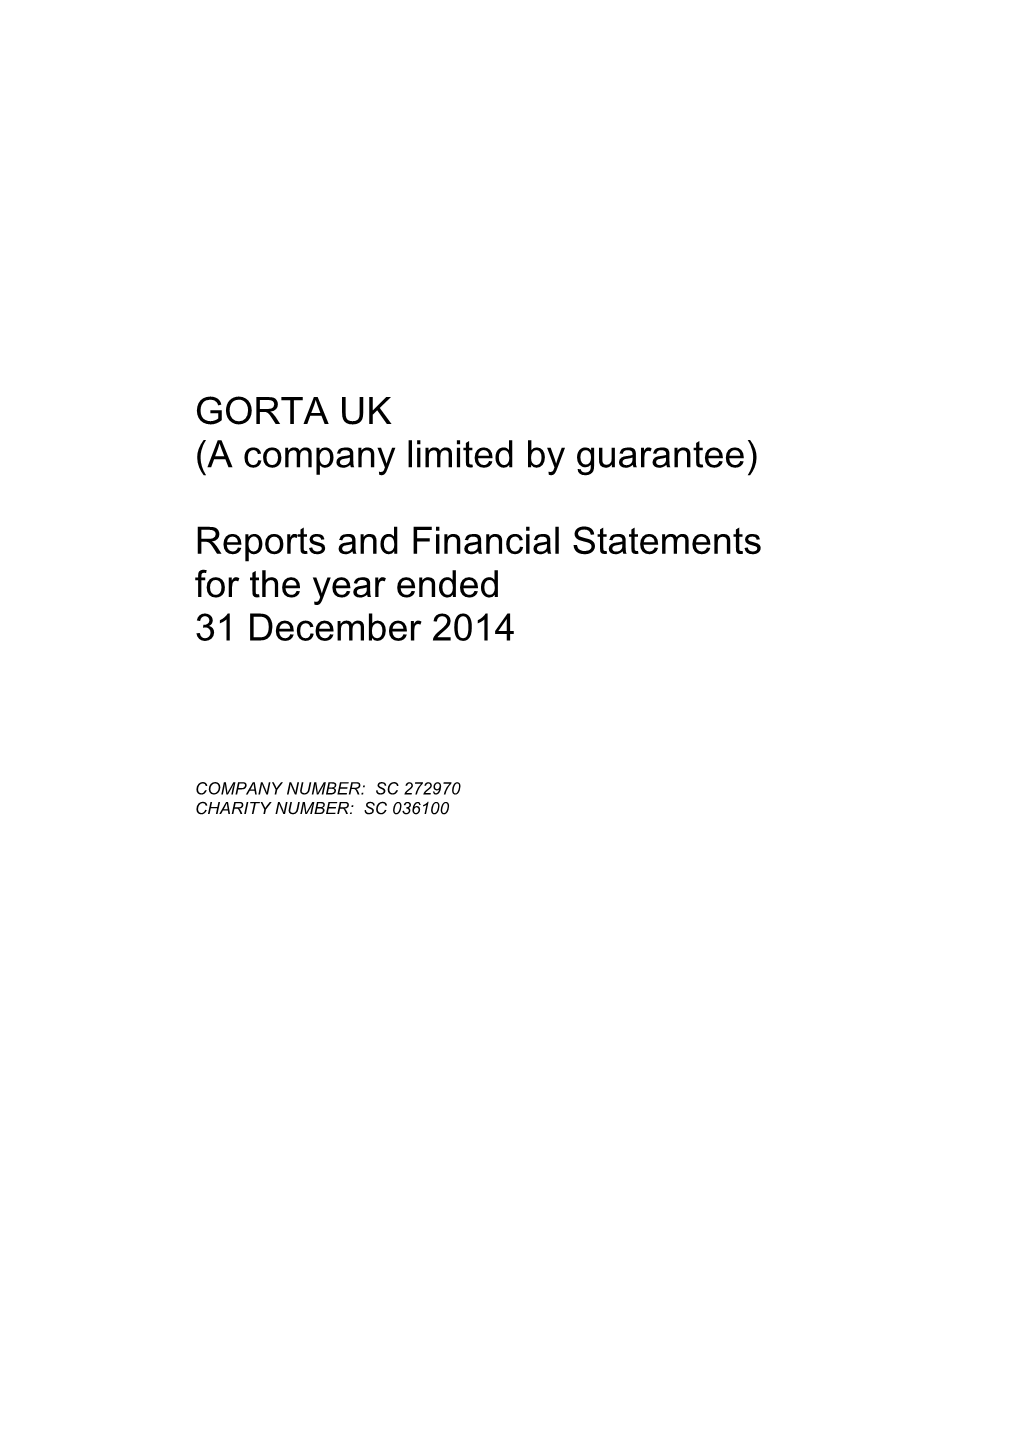 GORTA UK (A Company Limited by Guarantee)